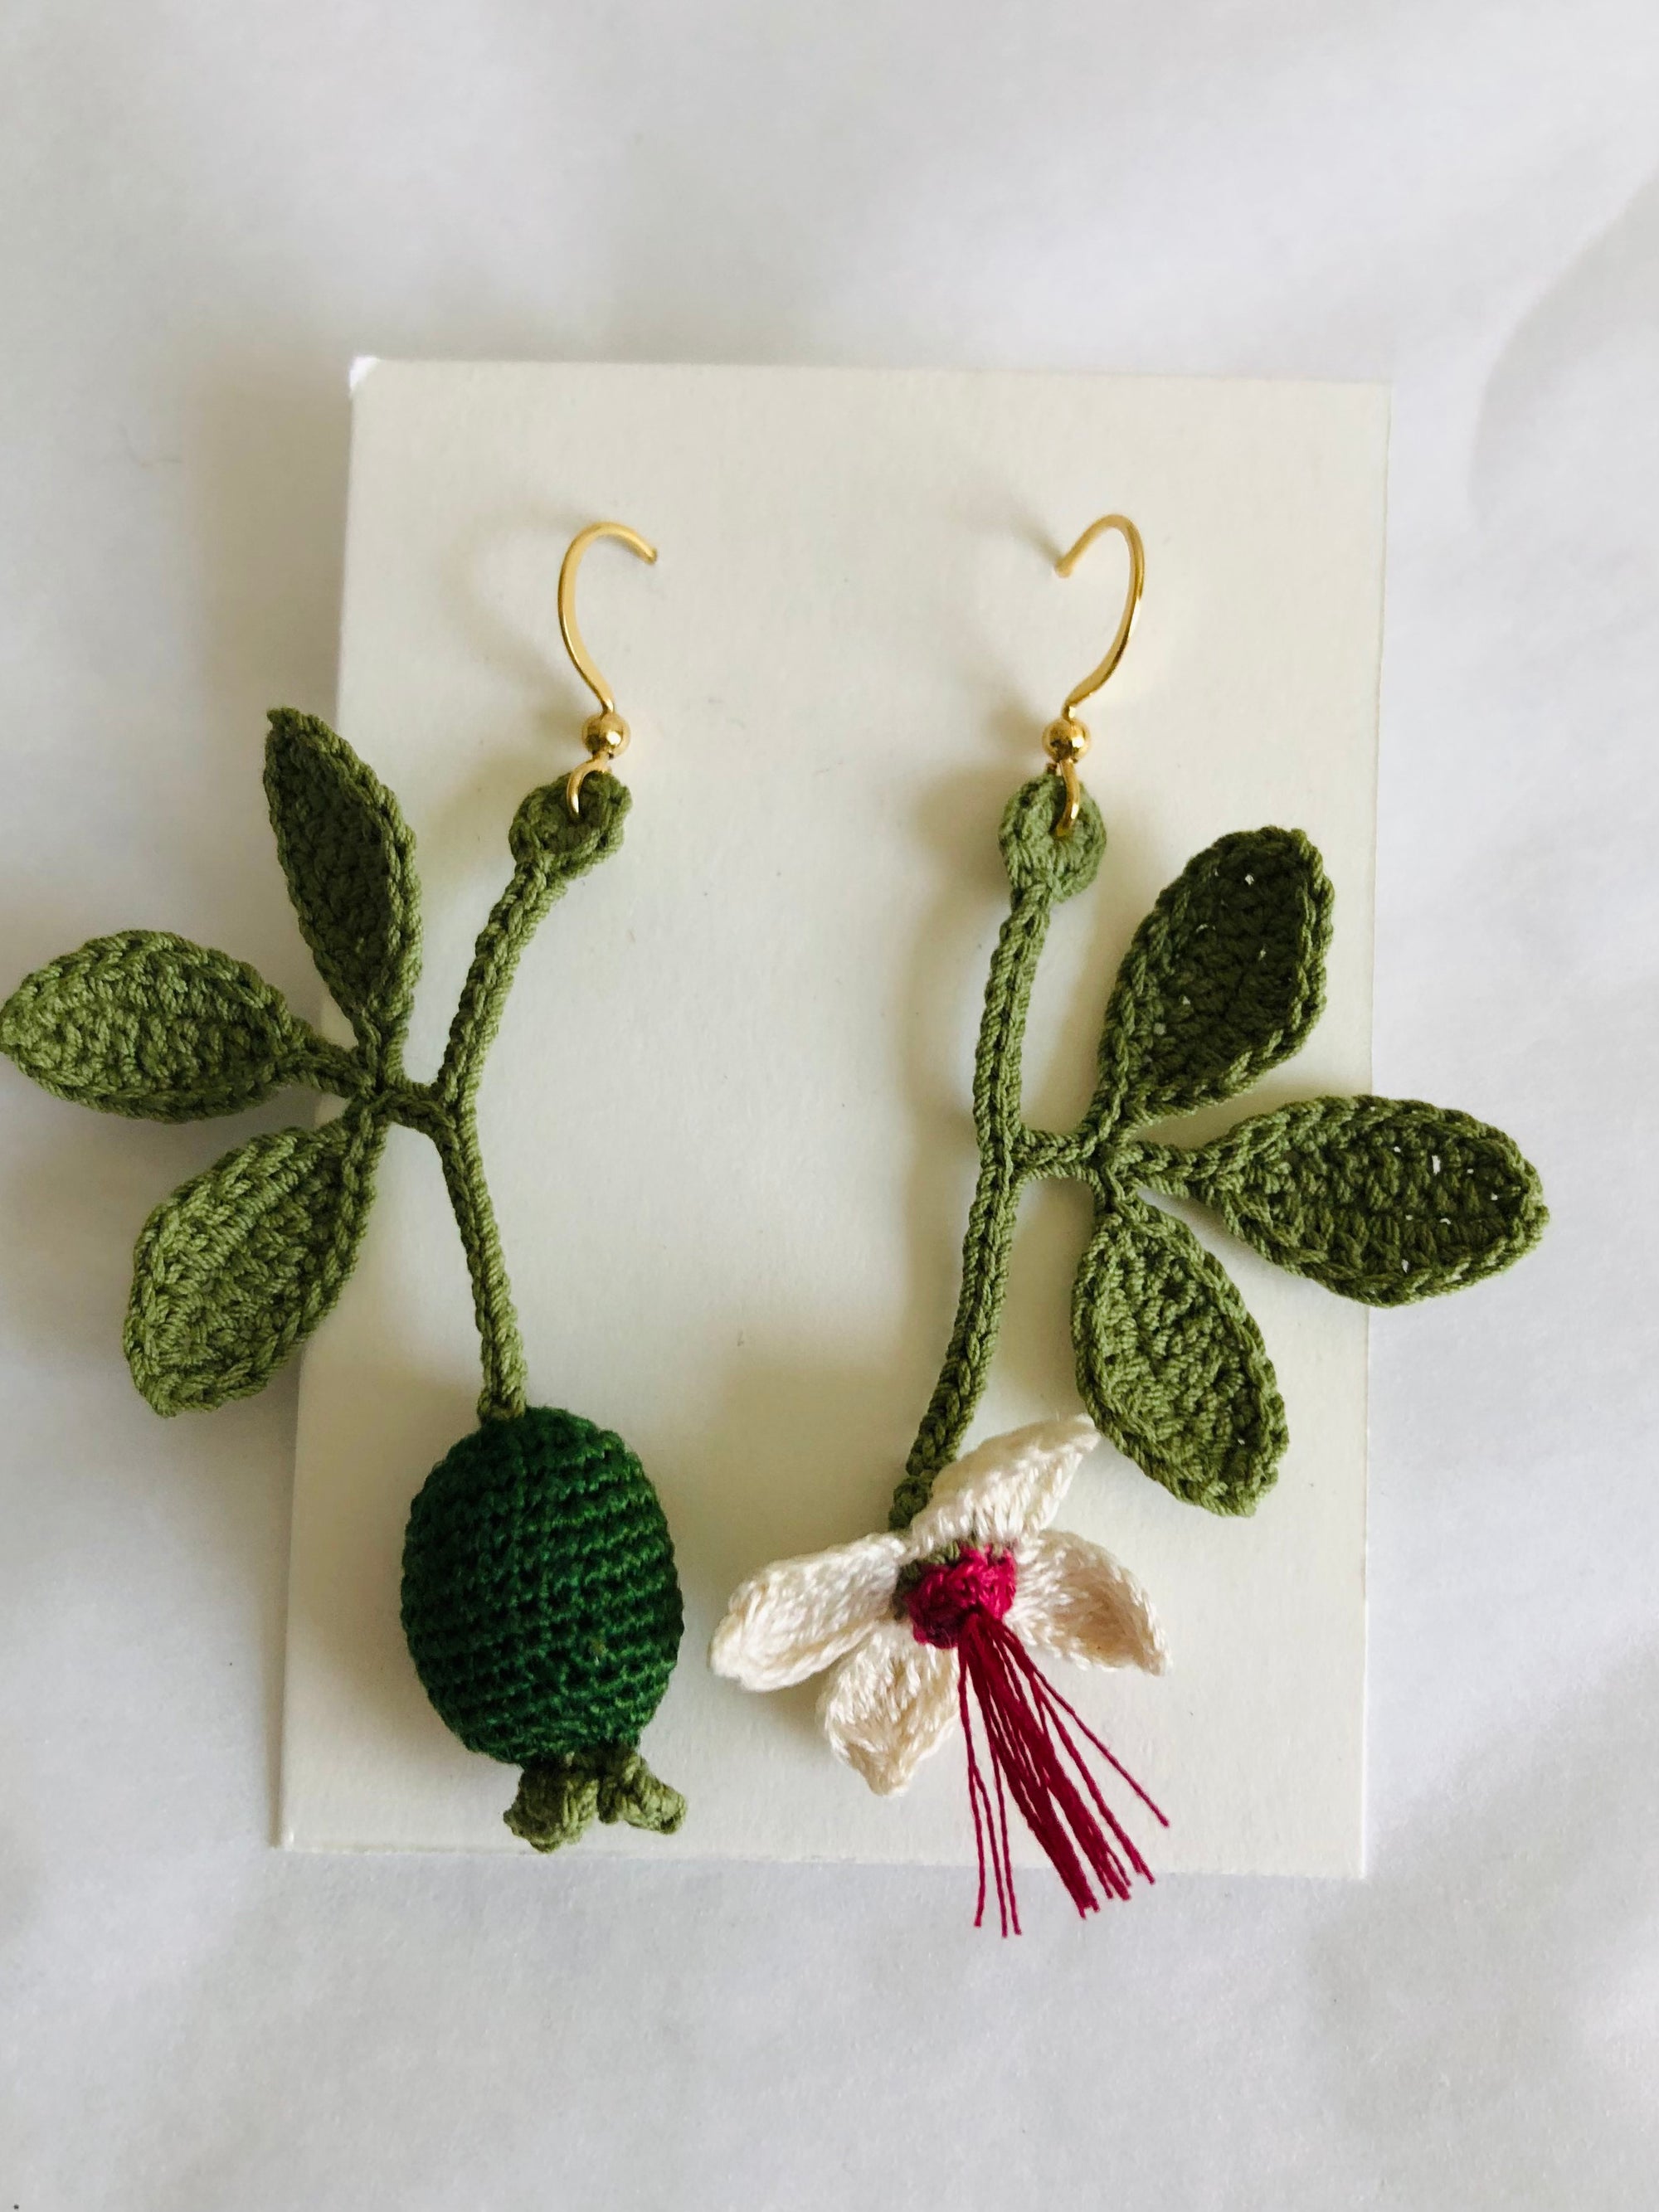 Hand crocheted feijoa earrings